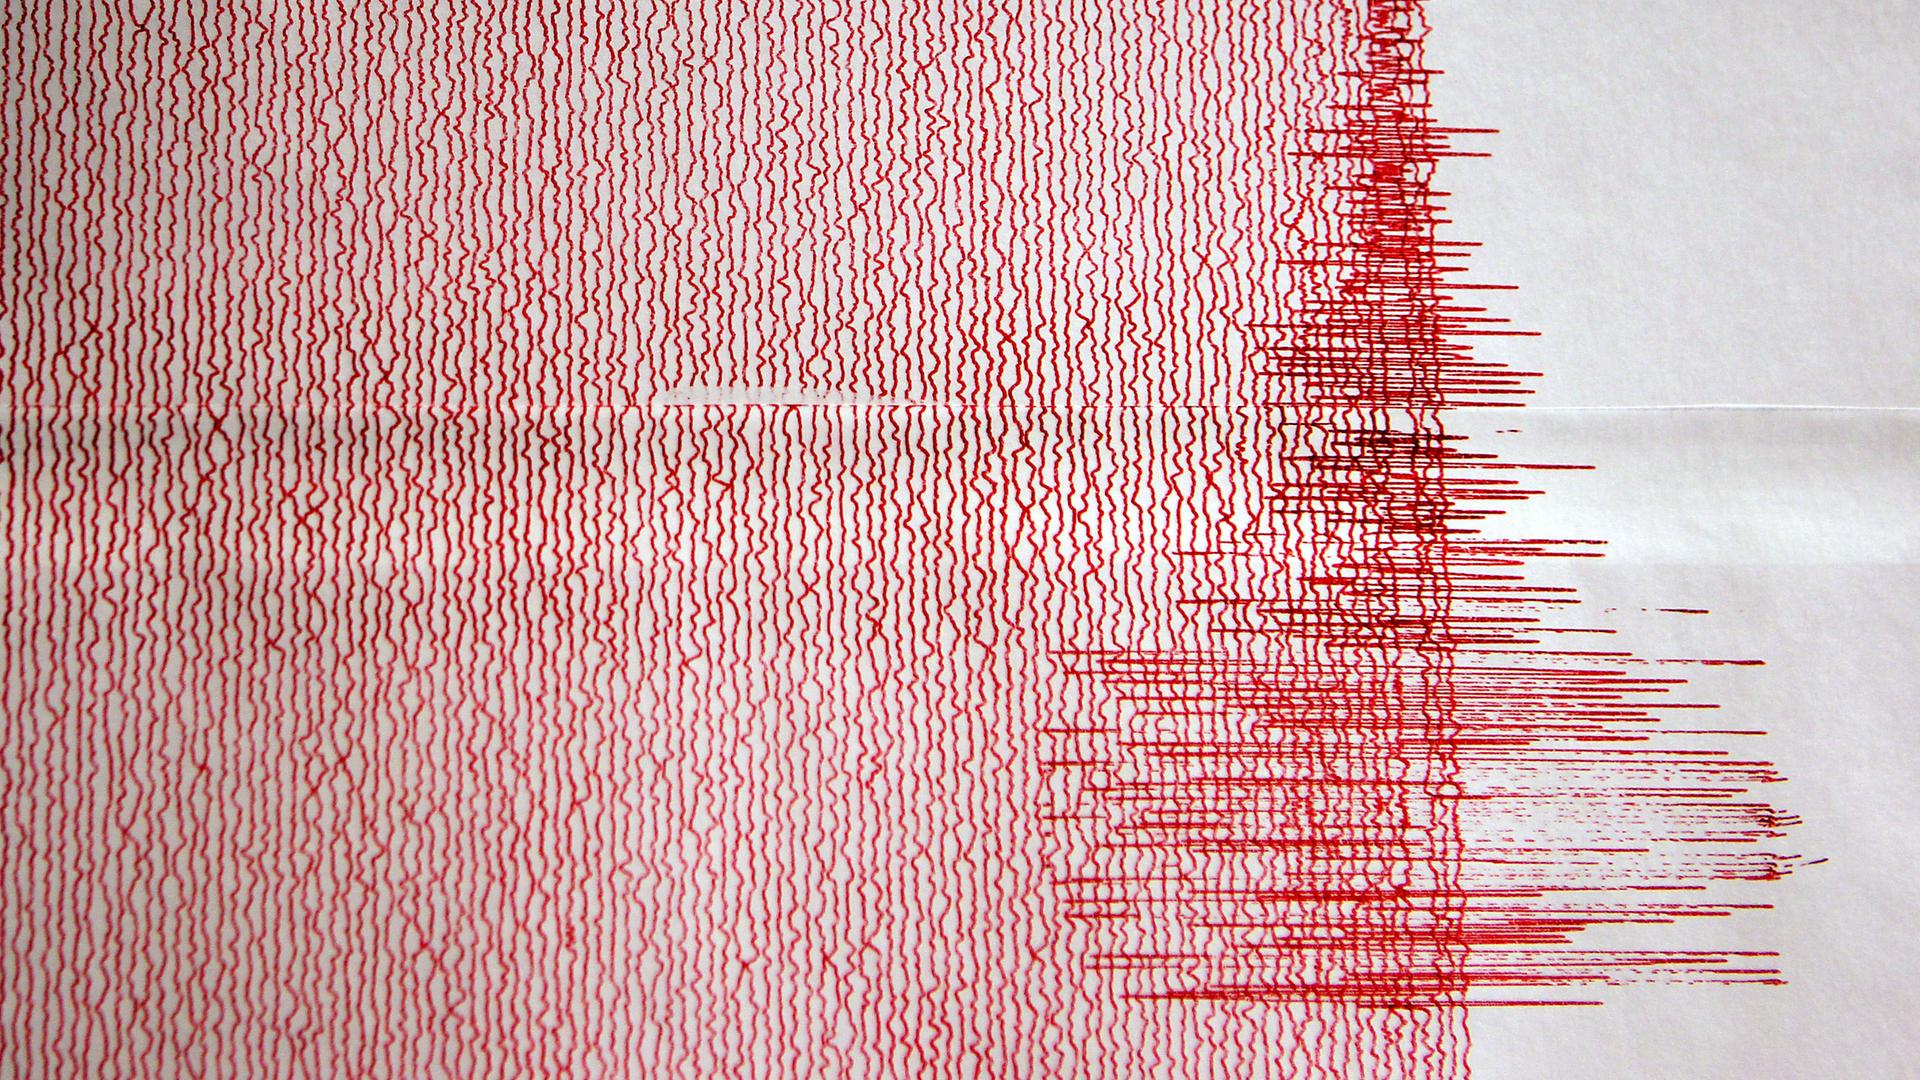 Ein weißes Blatt mit roten etwas verwackelten Linien. Sie liegen alle parallel nebeneinander. Rechts im Bild sieht diese verwackelte Linie ganz anders aus, sie reißt immer wieder nach rechts und links aus.